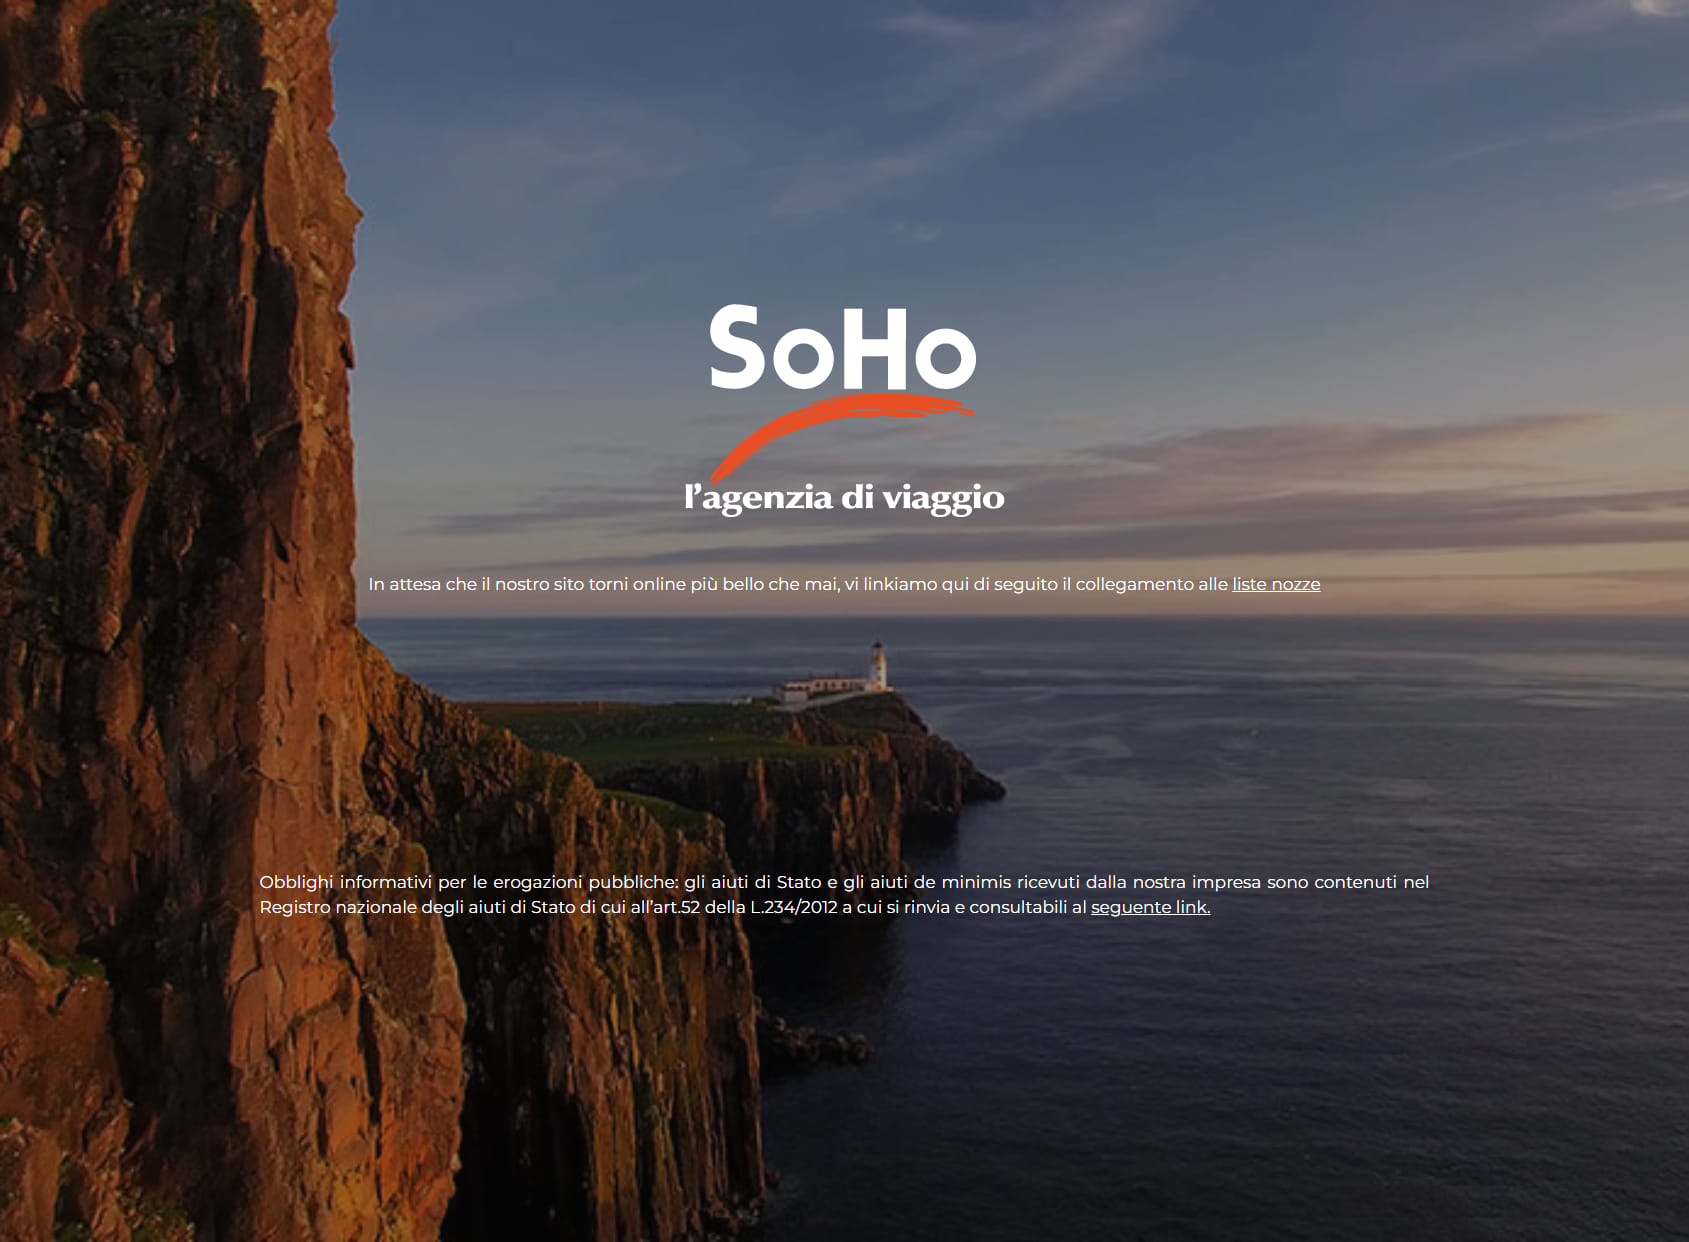 Soho the Travel Agency